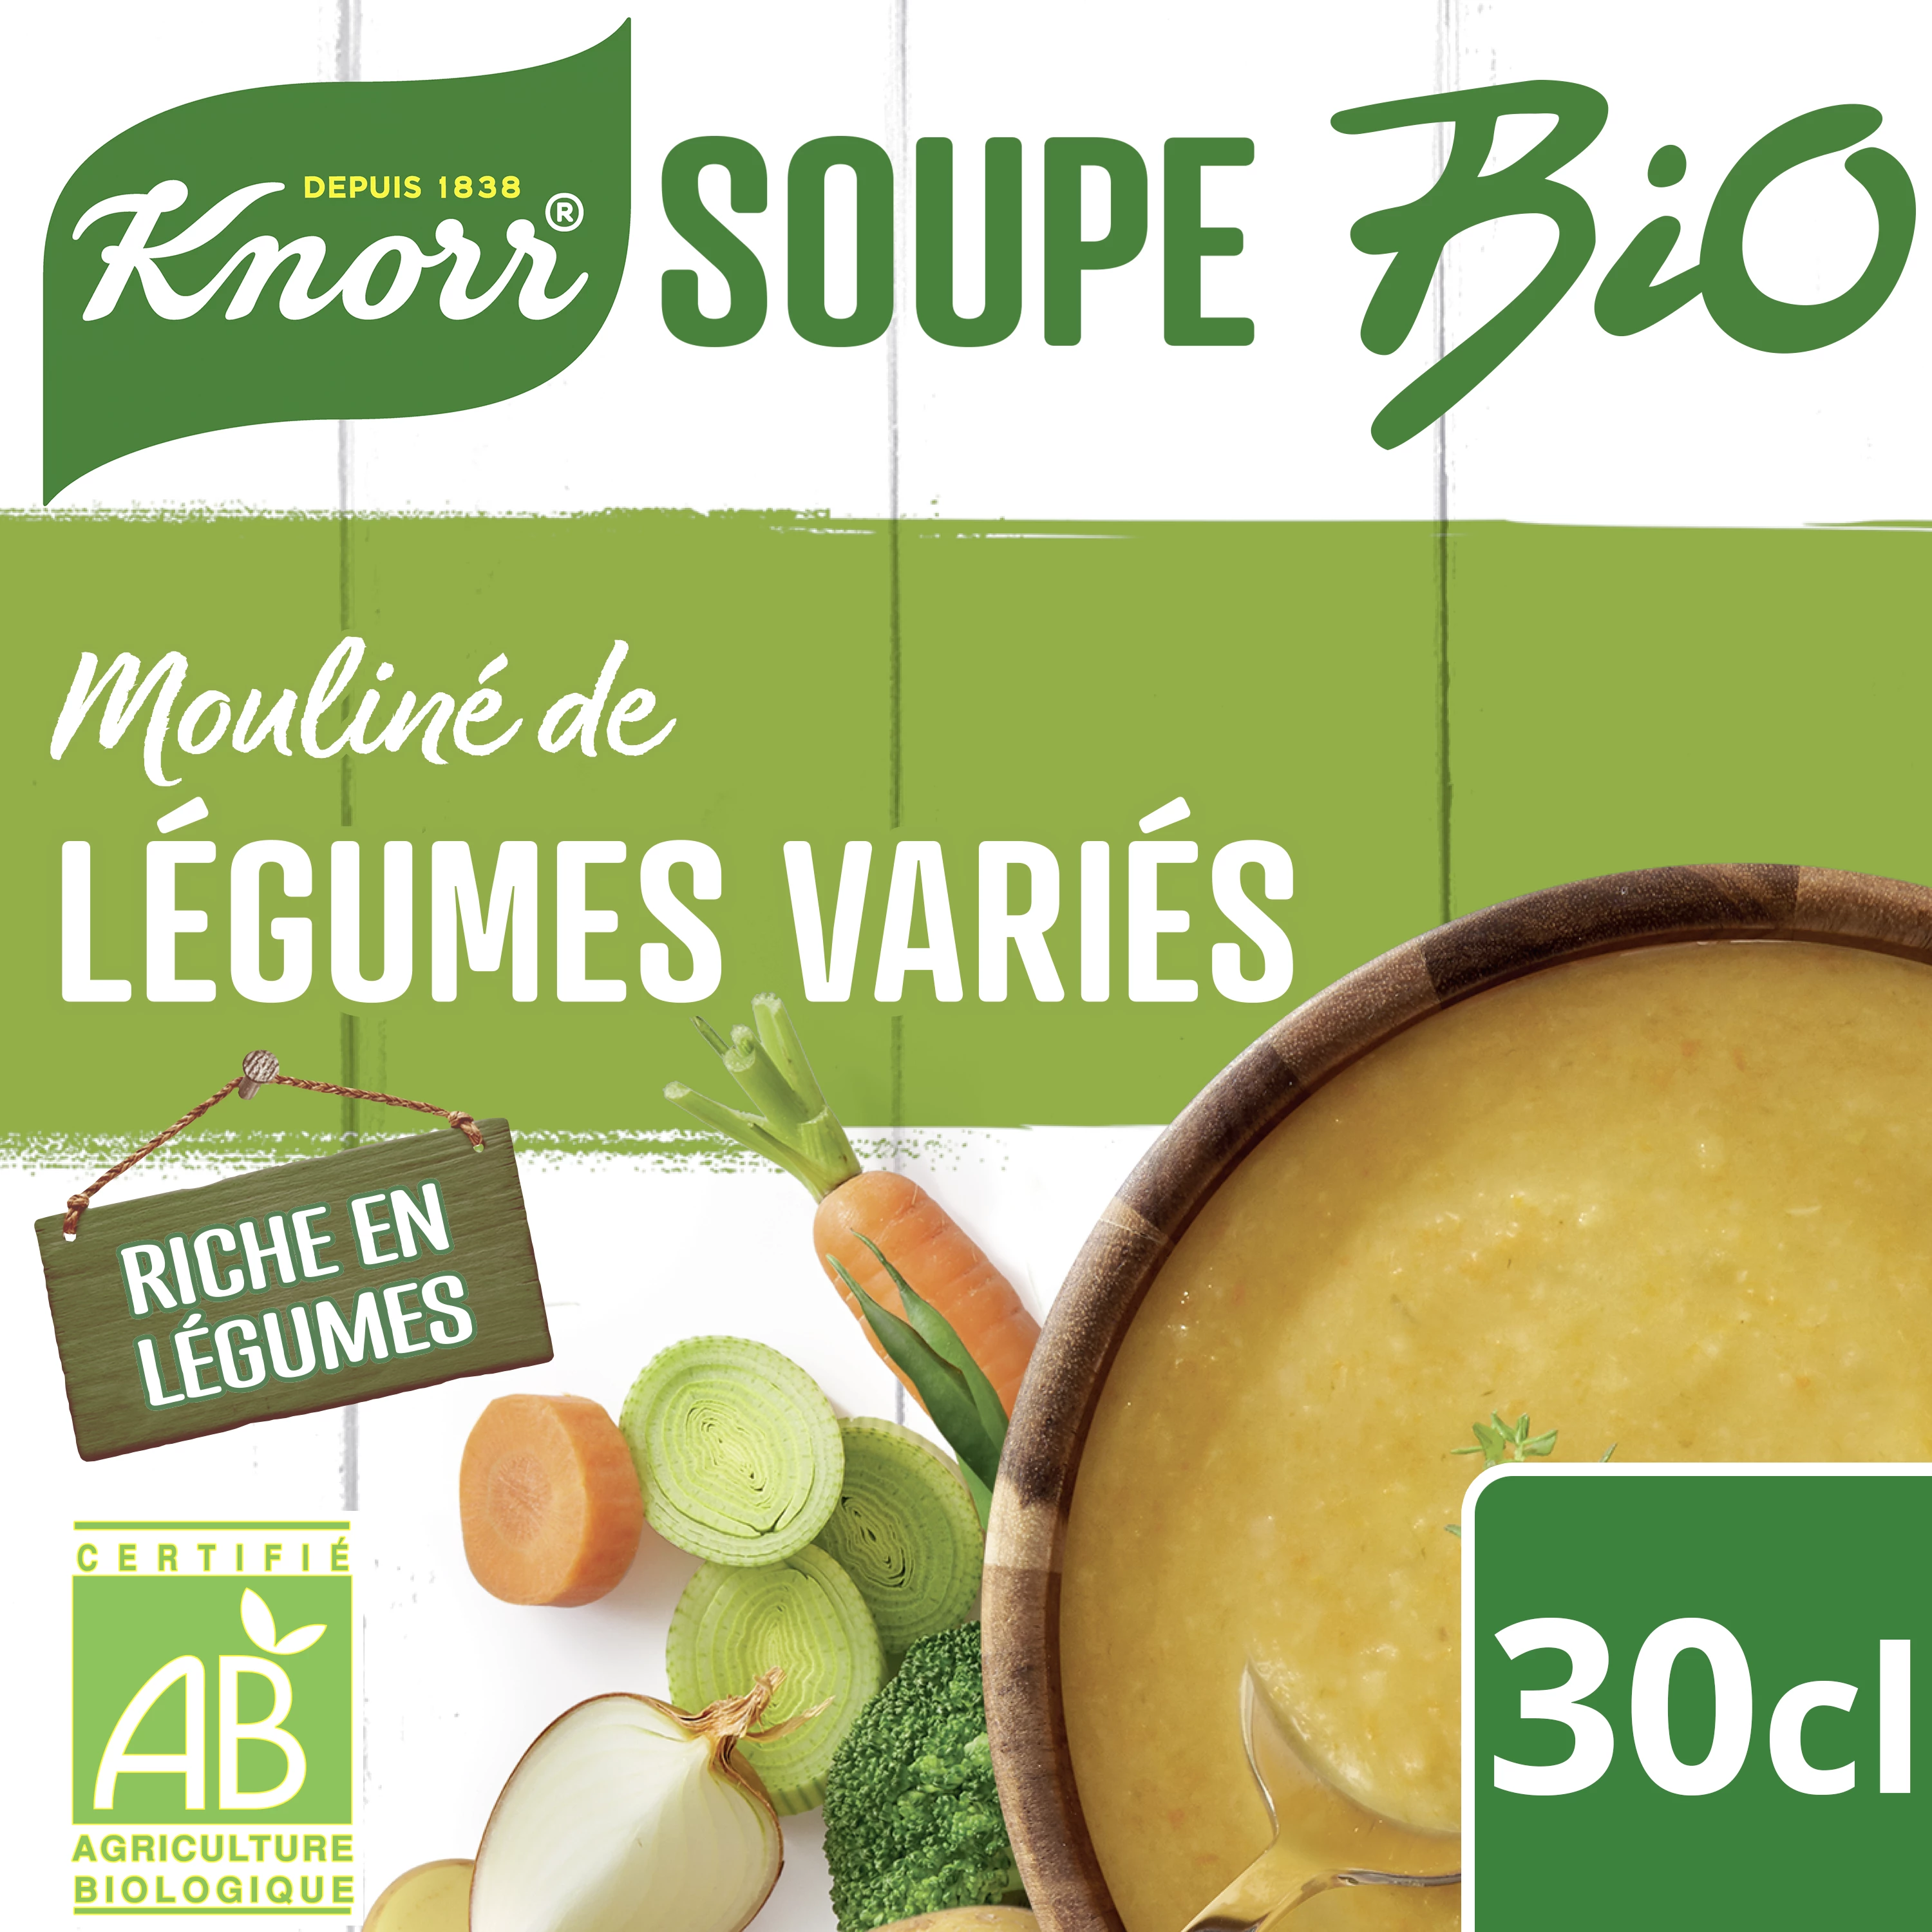 Sopa Mouliné de legumes orgânicos da horta 30cl - KNORR